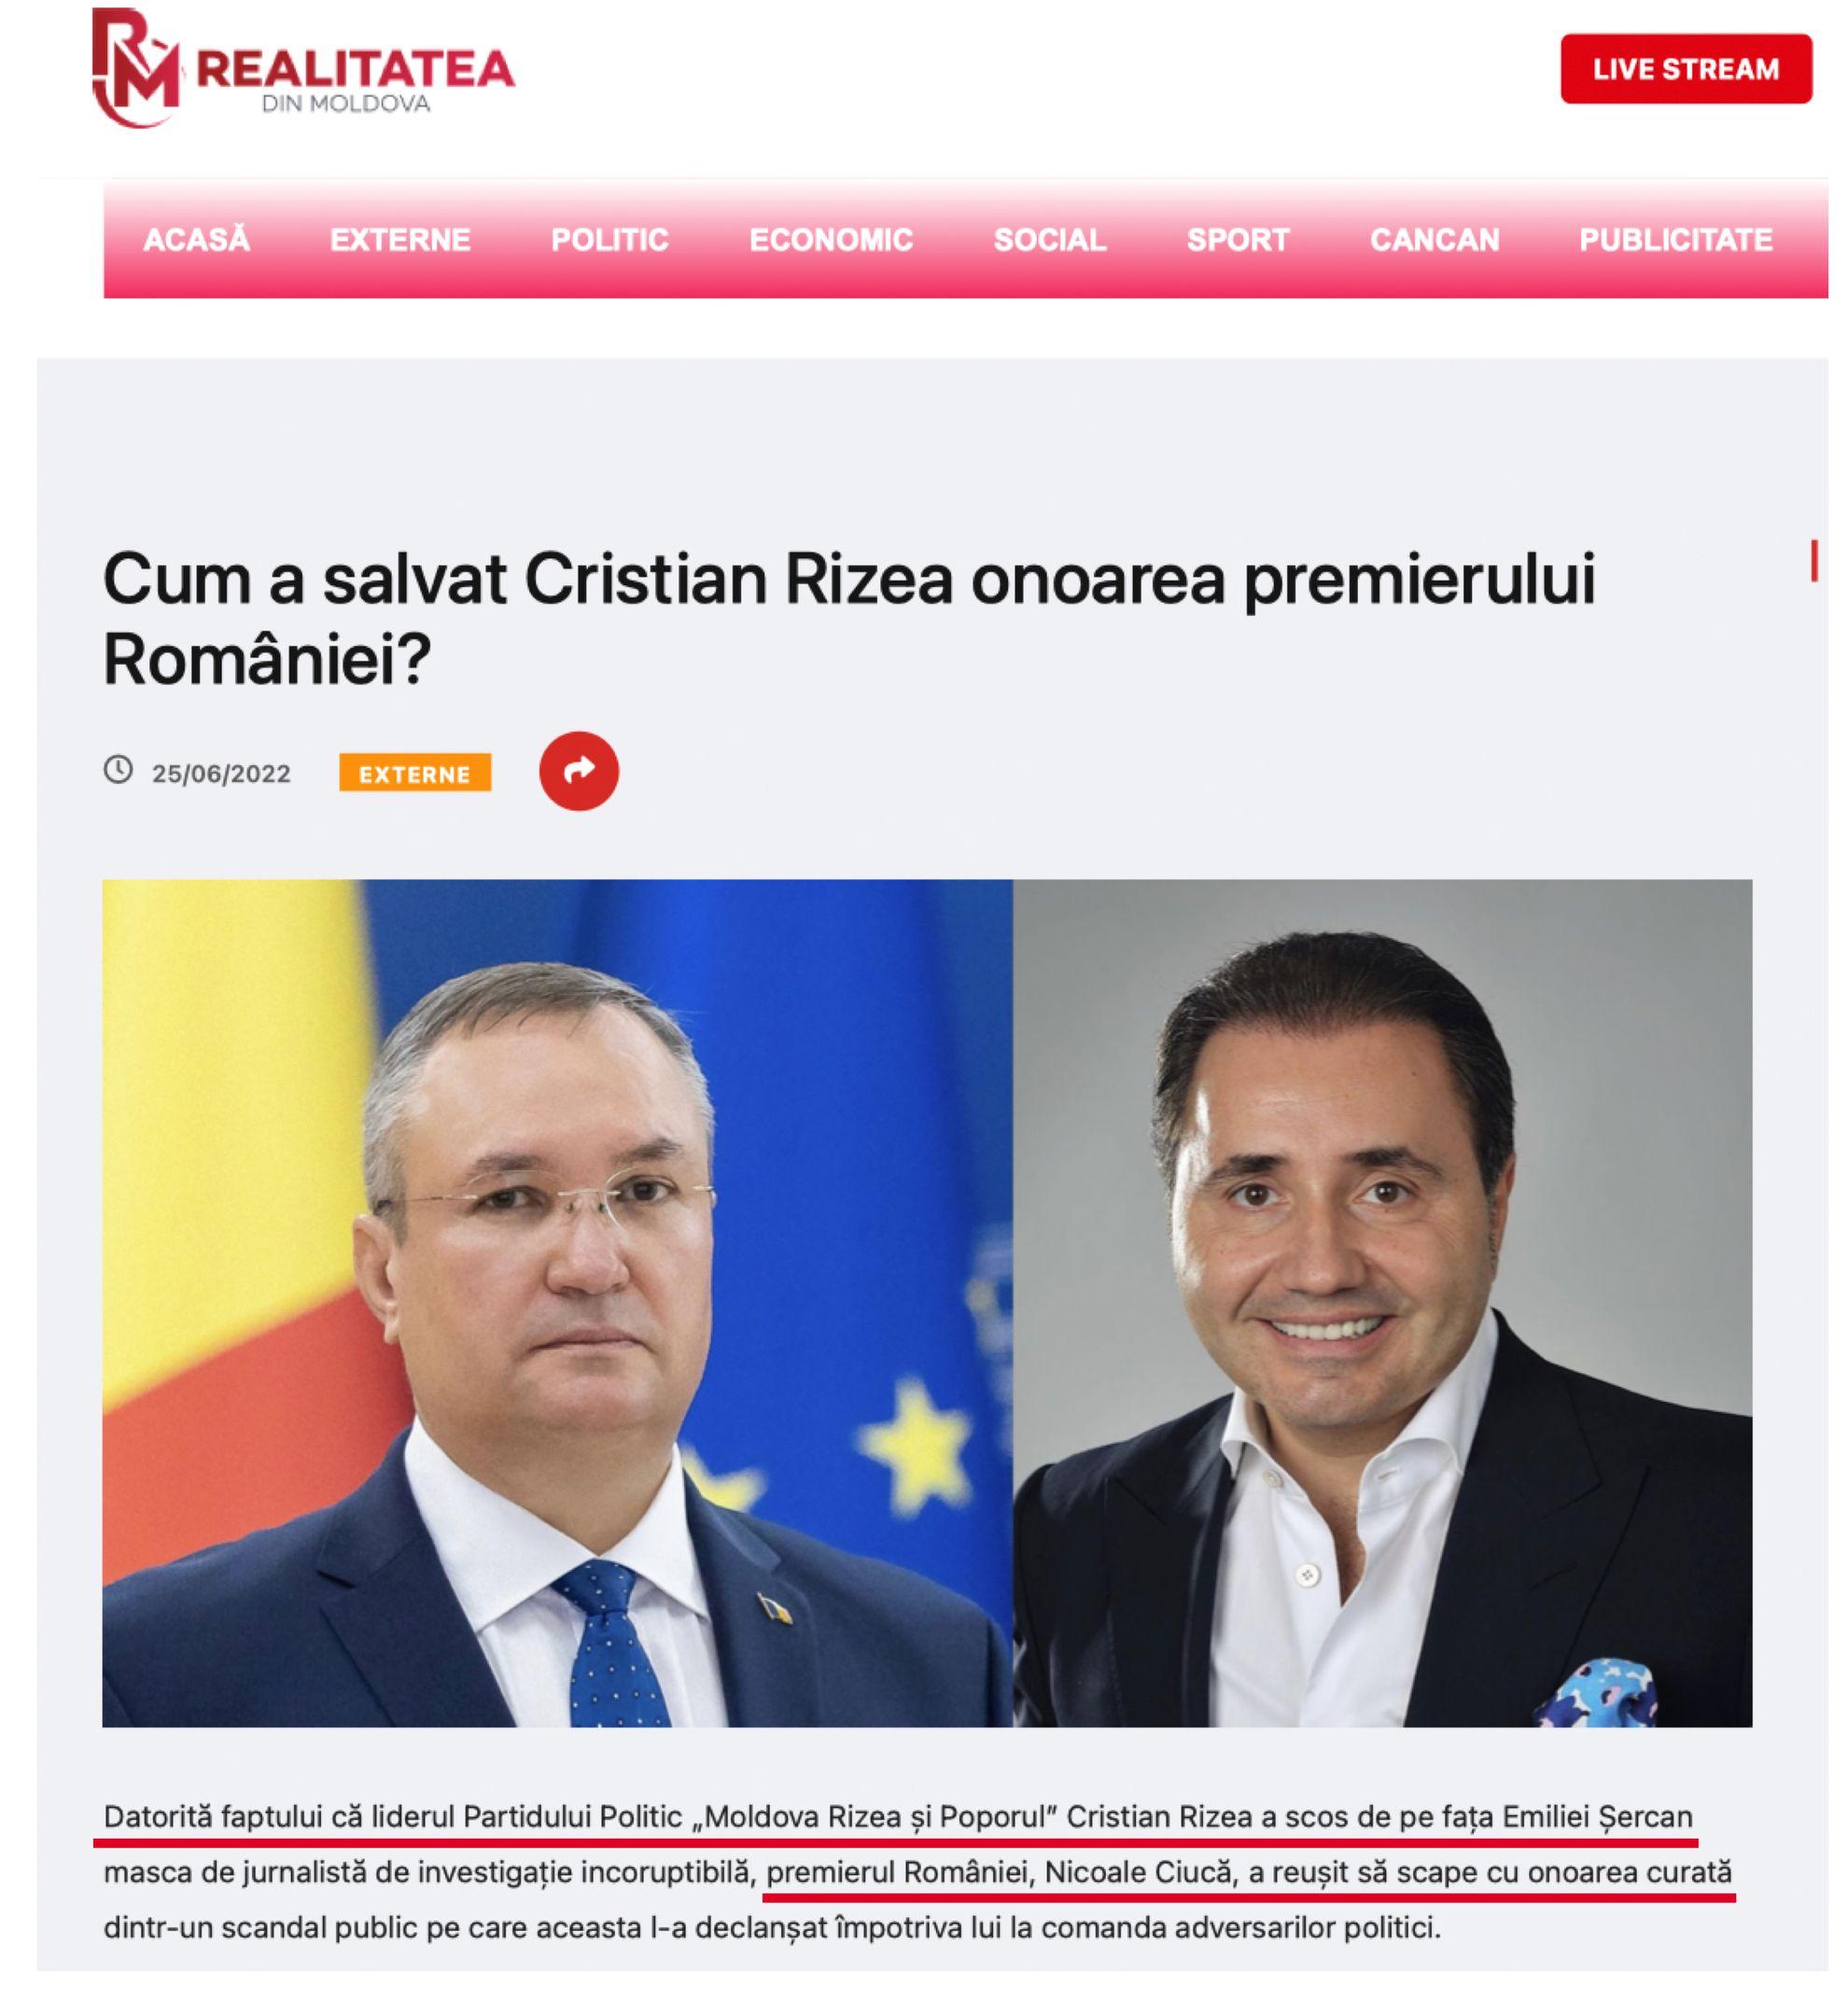 Captură de ecran de pe site-ul realitateadinmoldova[.]md, dezactivat după ce proprietarul Cristian Rizea a fost expulzat din Republica Moldova